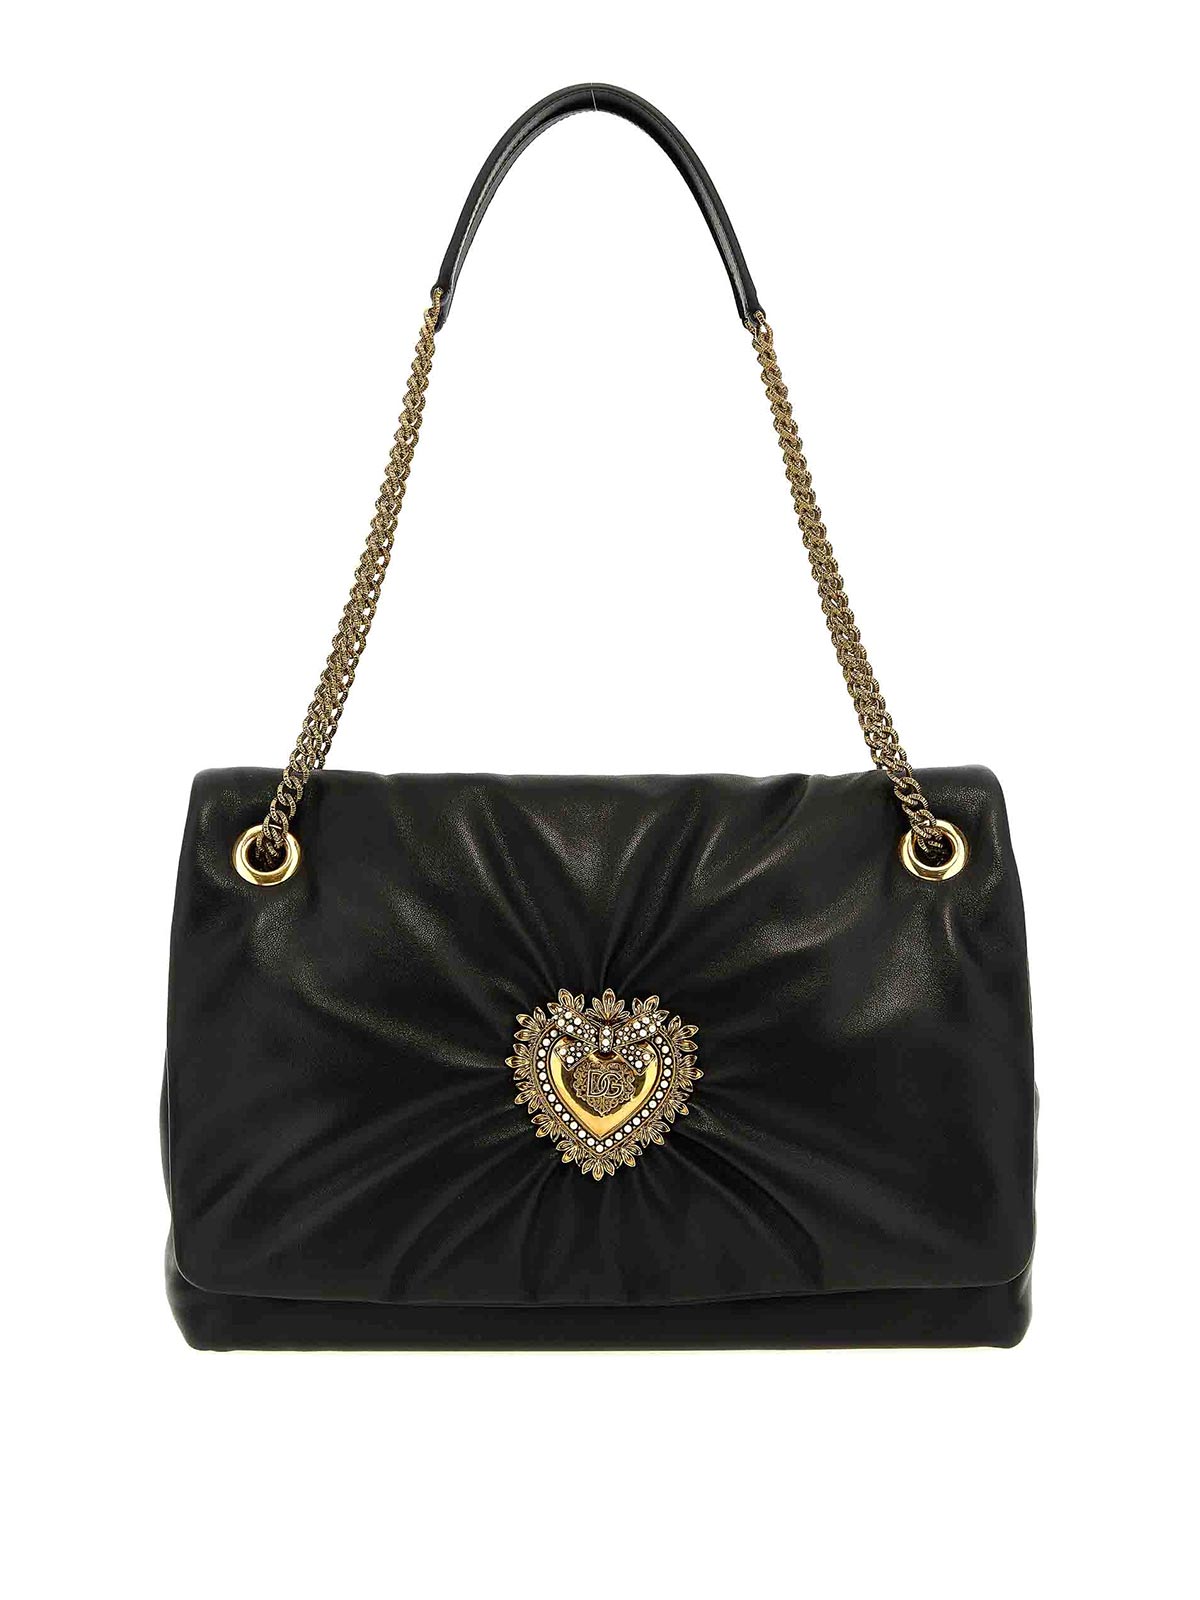 Dolce & Gabbana Devotion Shoulder Bag In Black